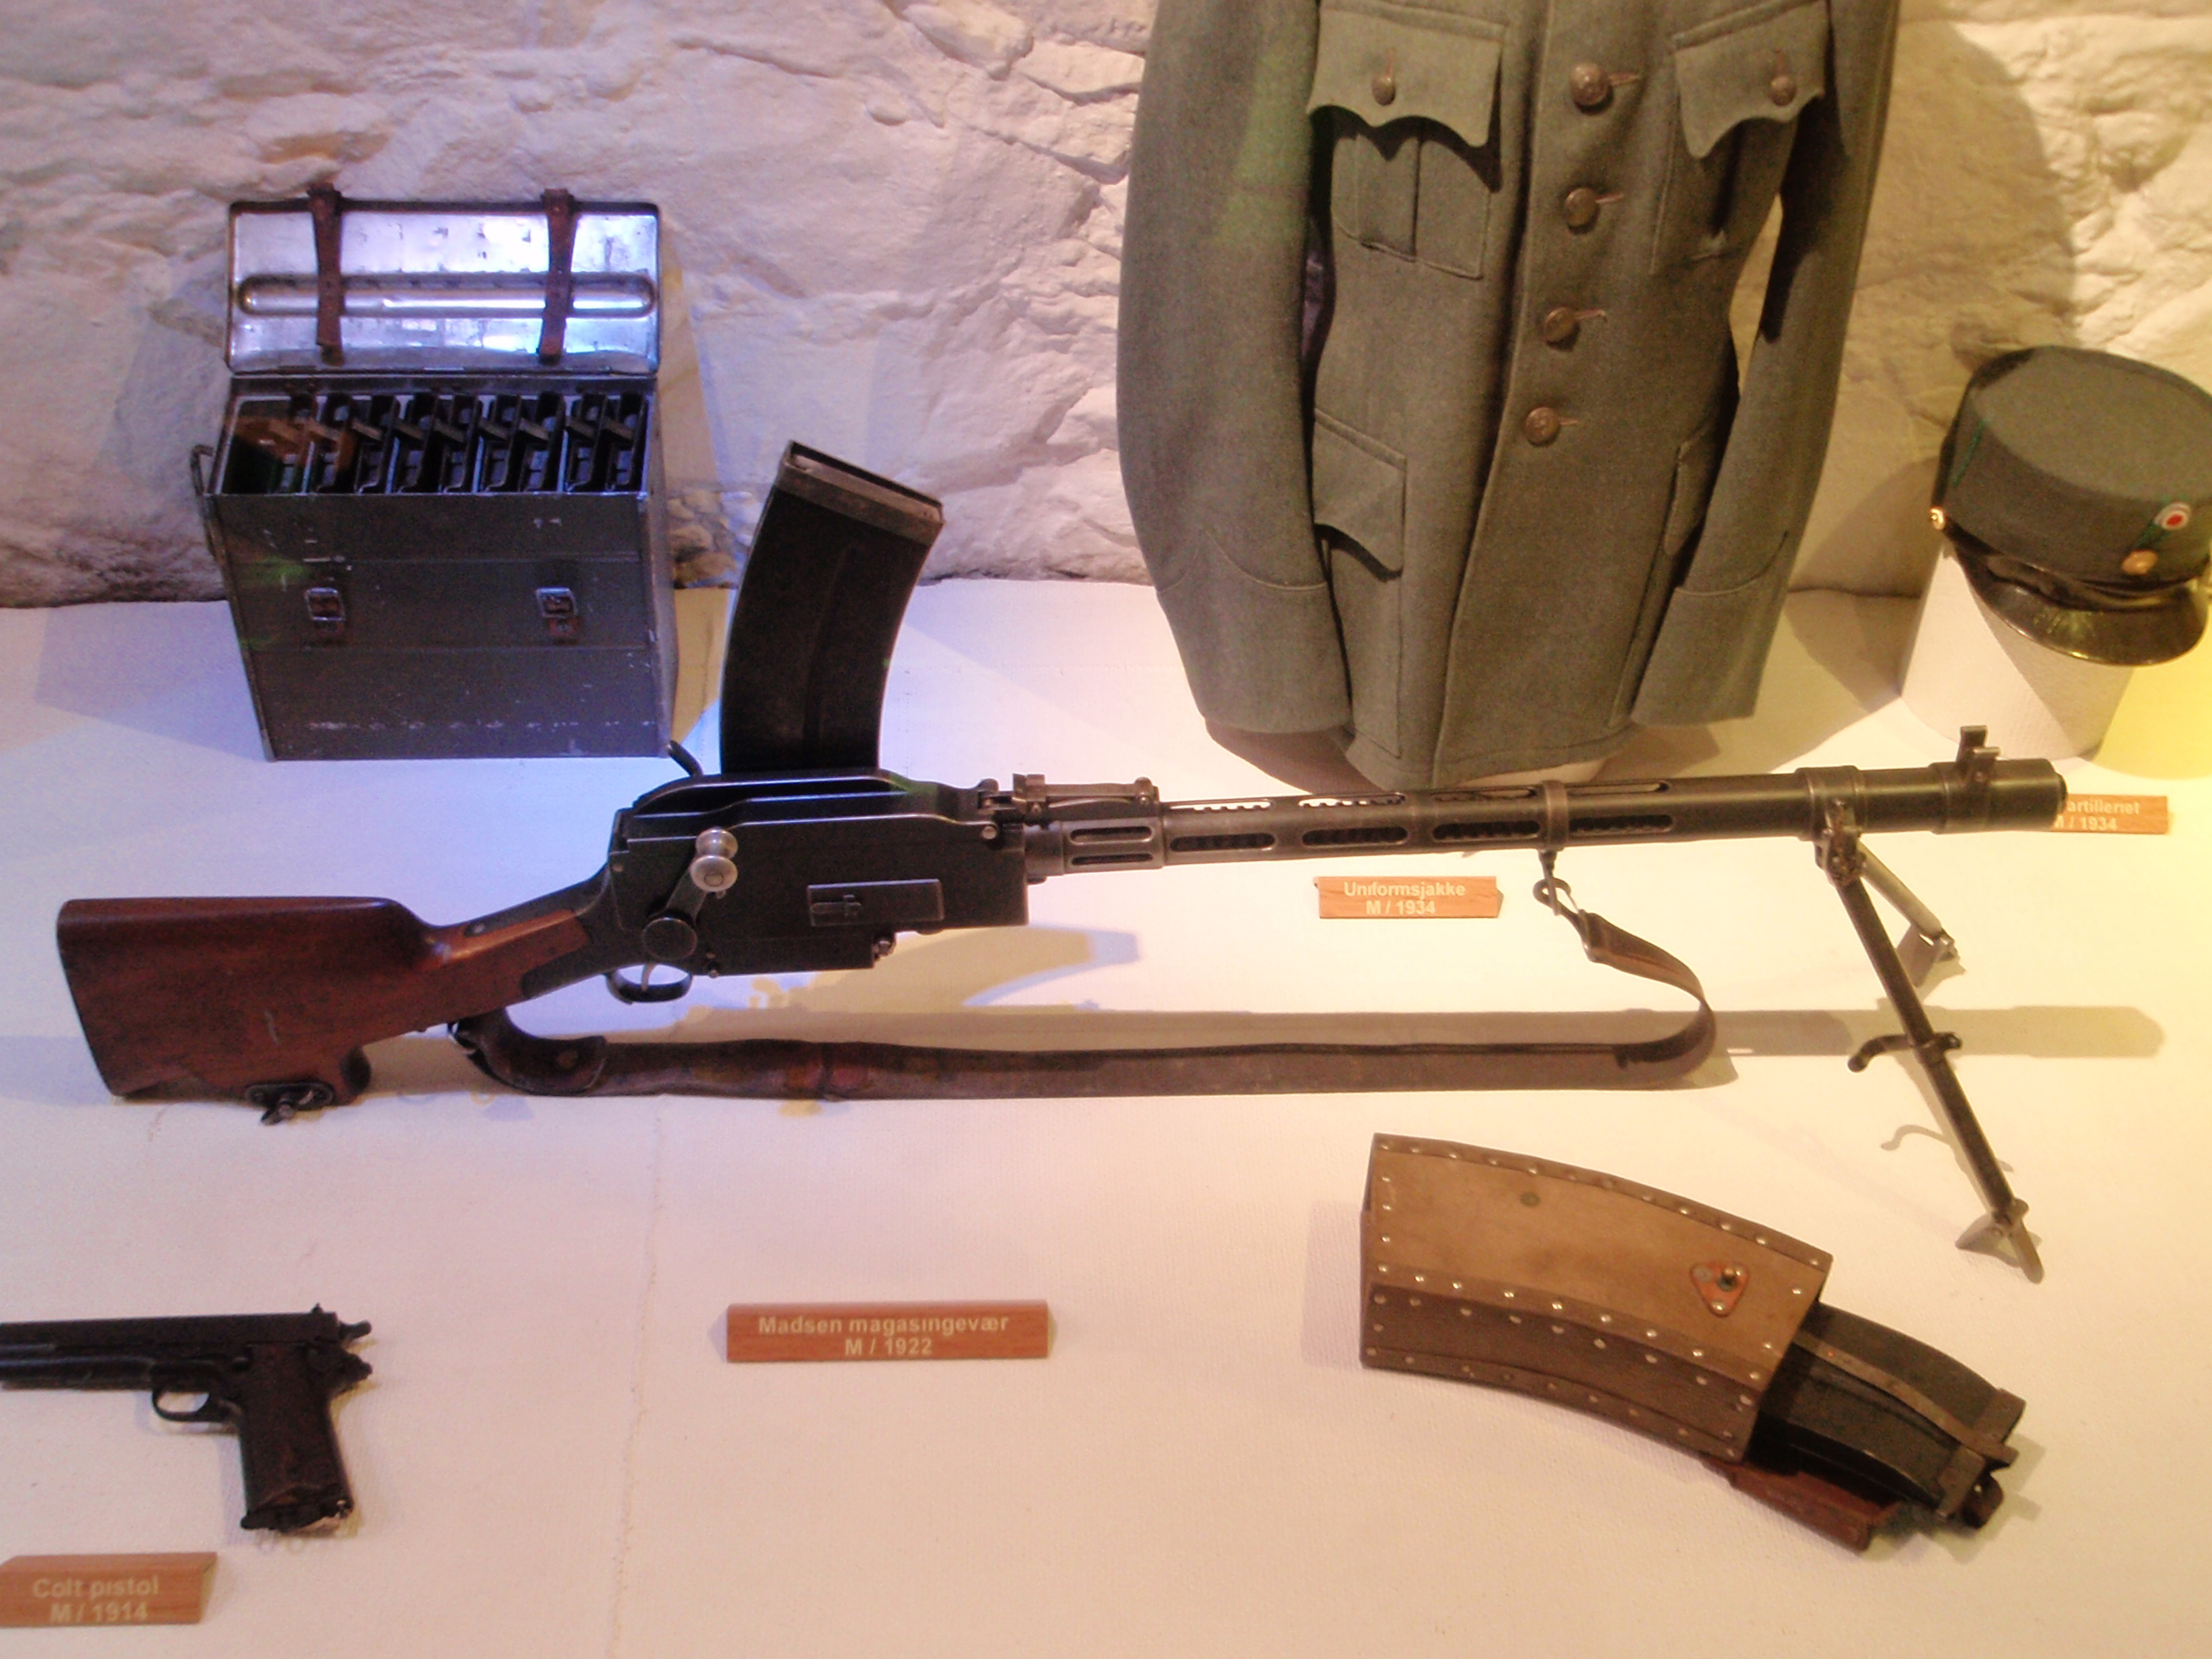 5*55,旧式武器和机枪采用全装药),自动步枪的65*40(格伦德尔)和卡宾